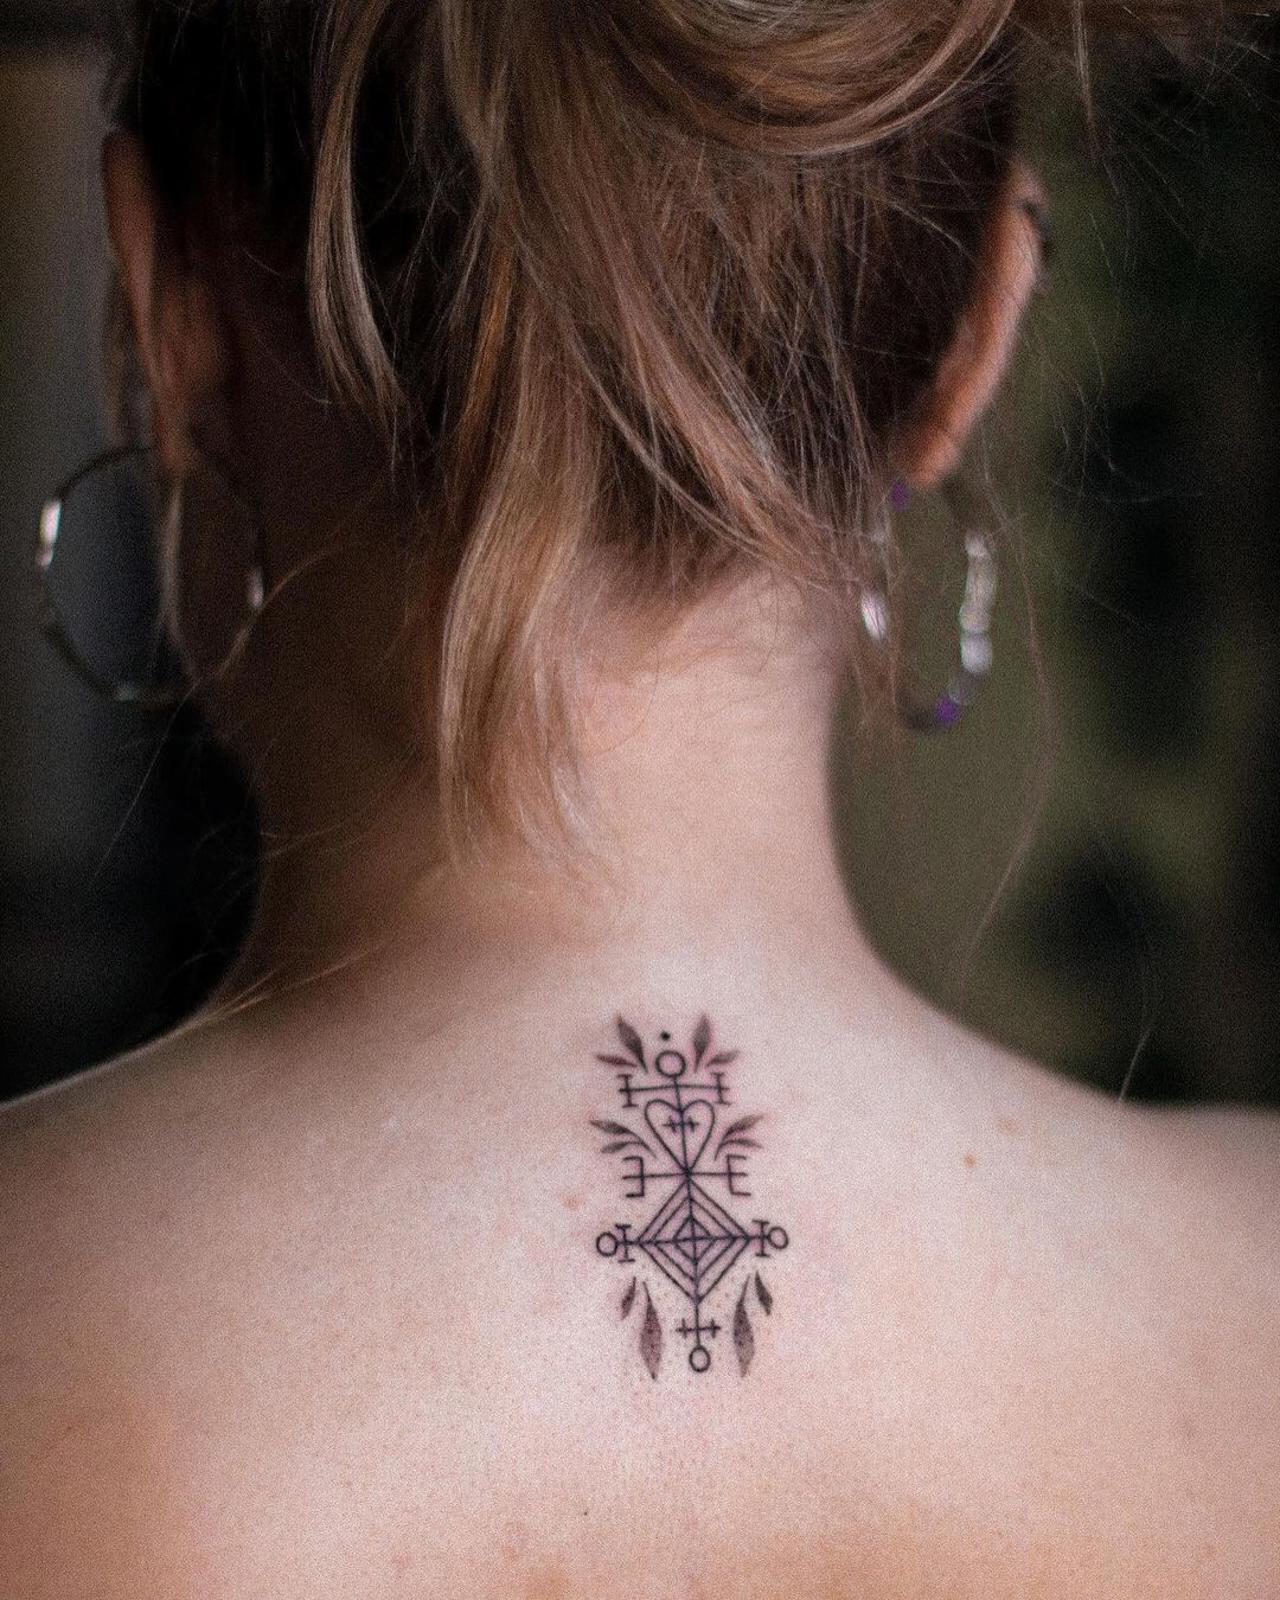 Tatuajes vikingos que triunfan y su significado: runas, cuervos y brújulas